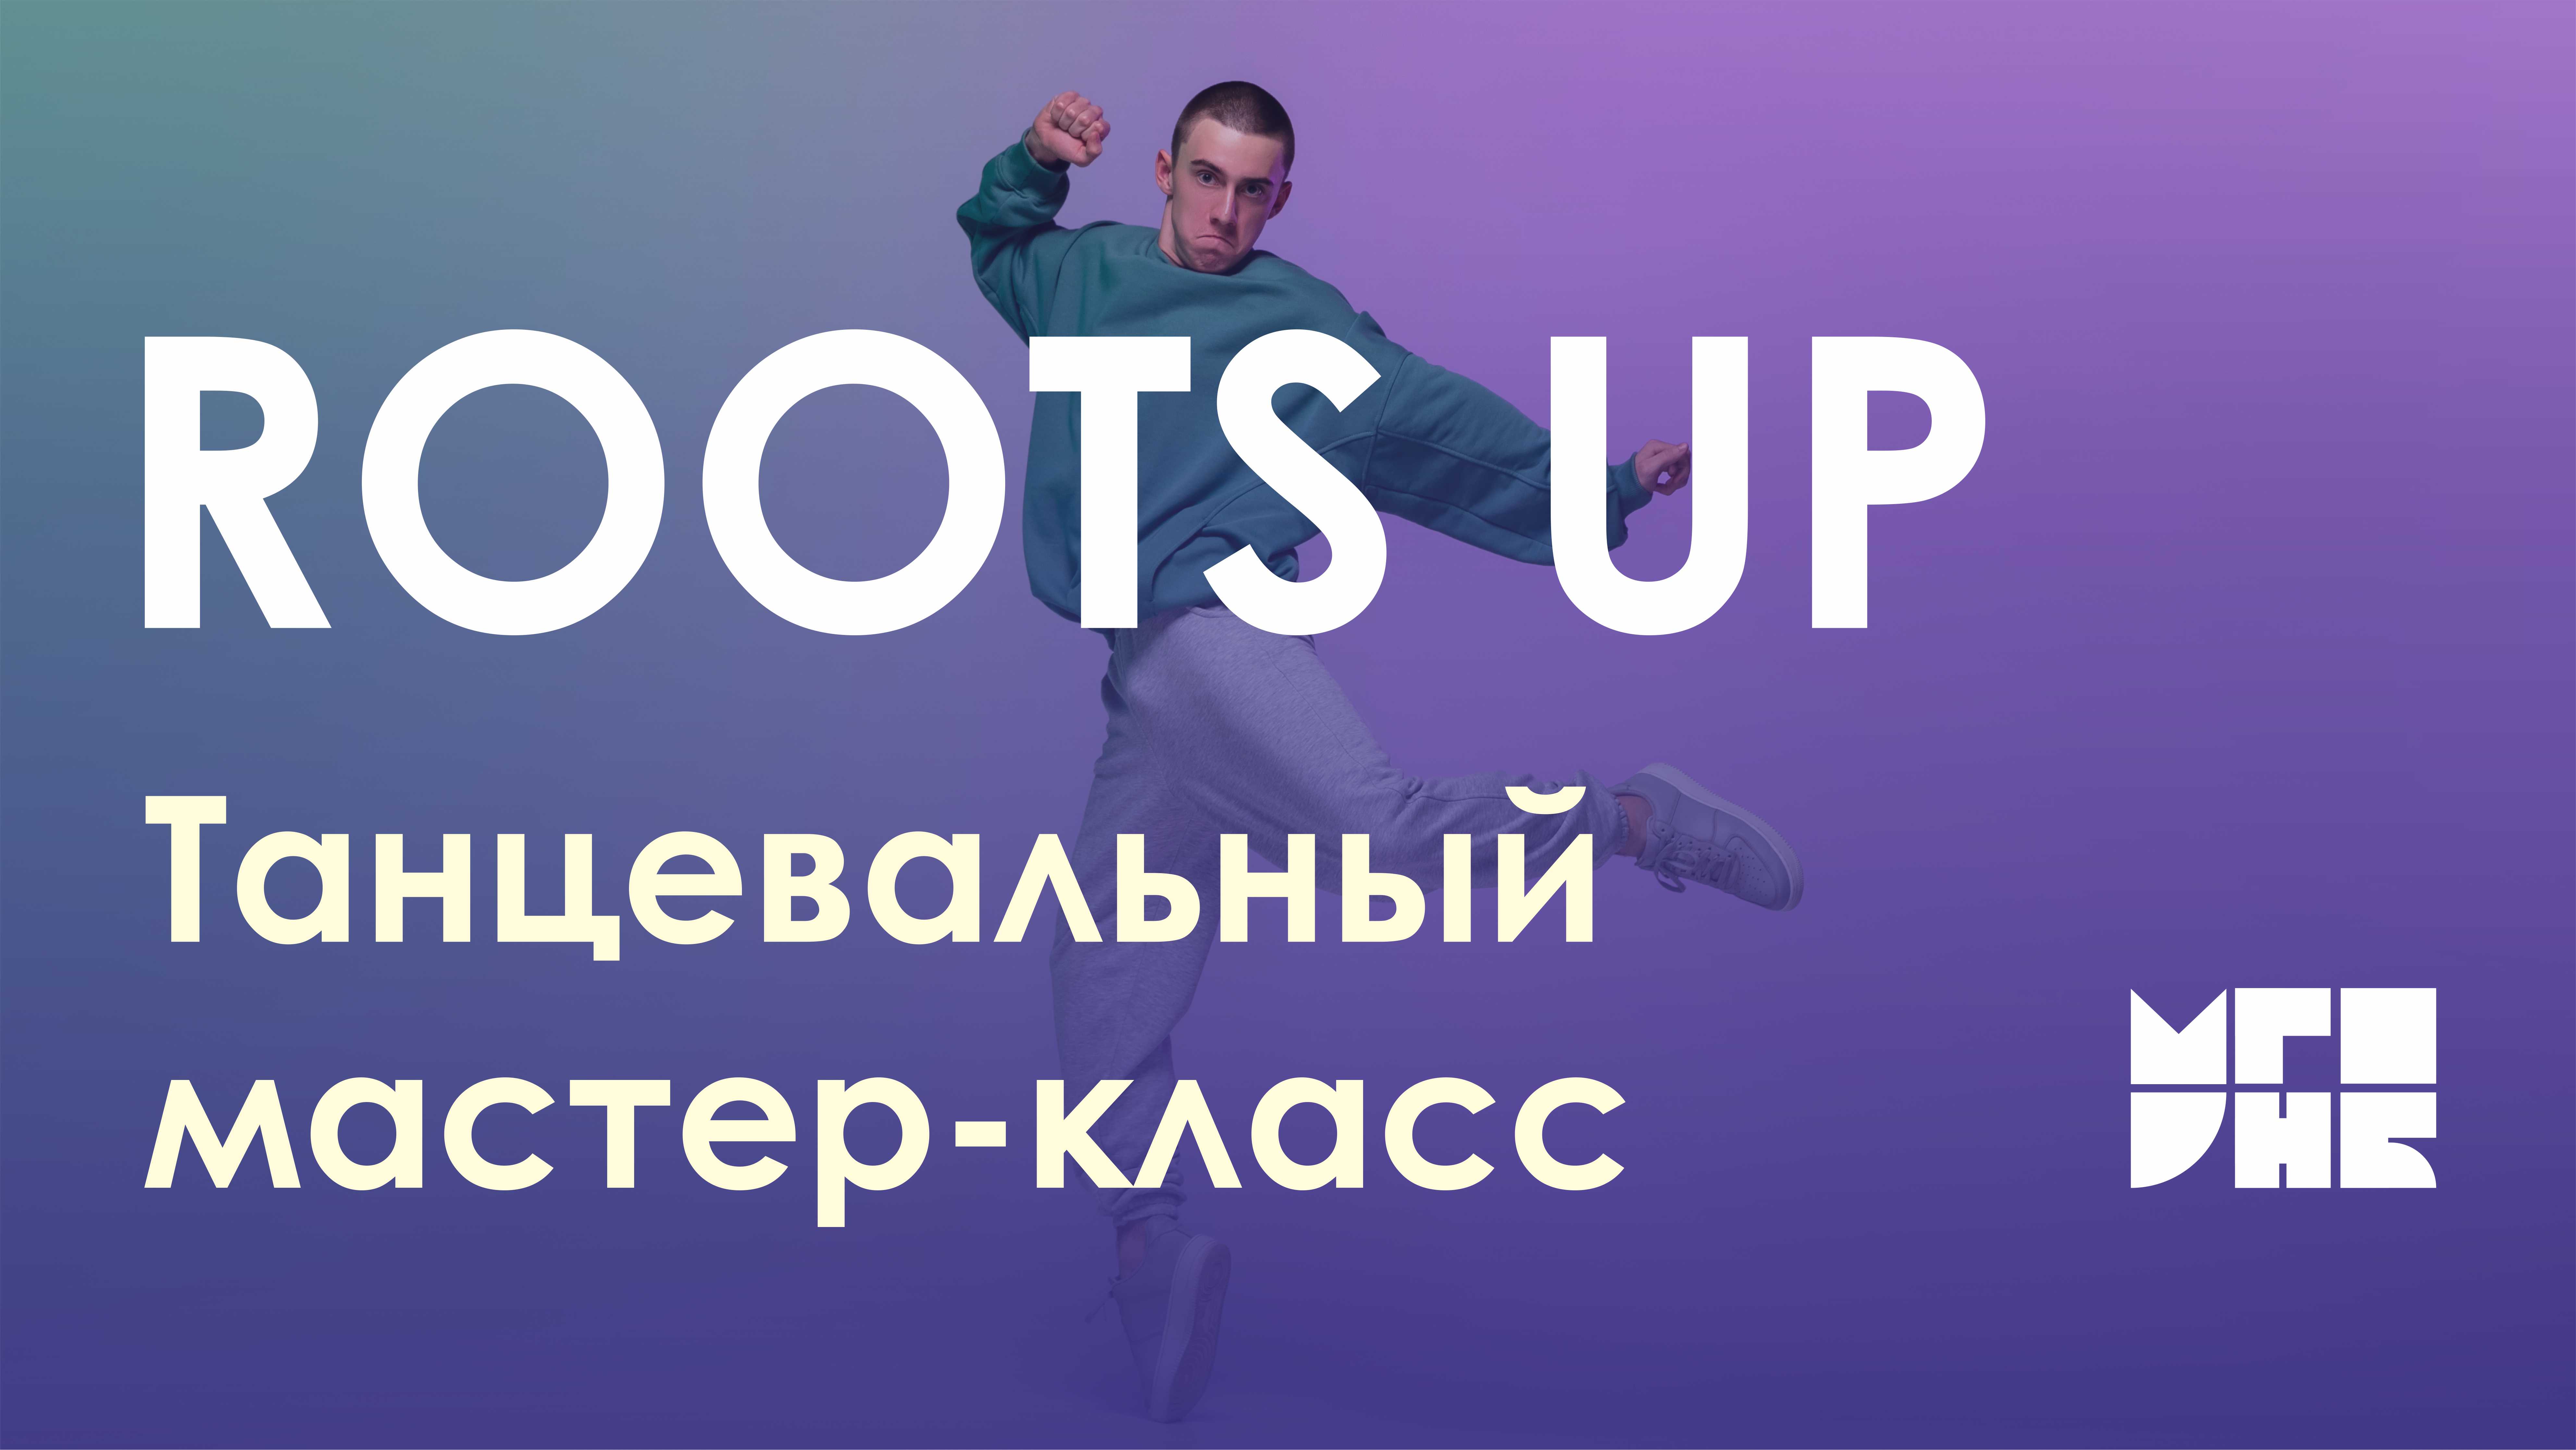 Танцевальный мастер-класс от команды "Roots up" во главе со Славой Бурцевым